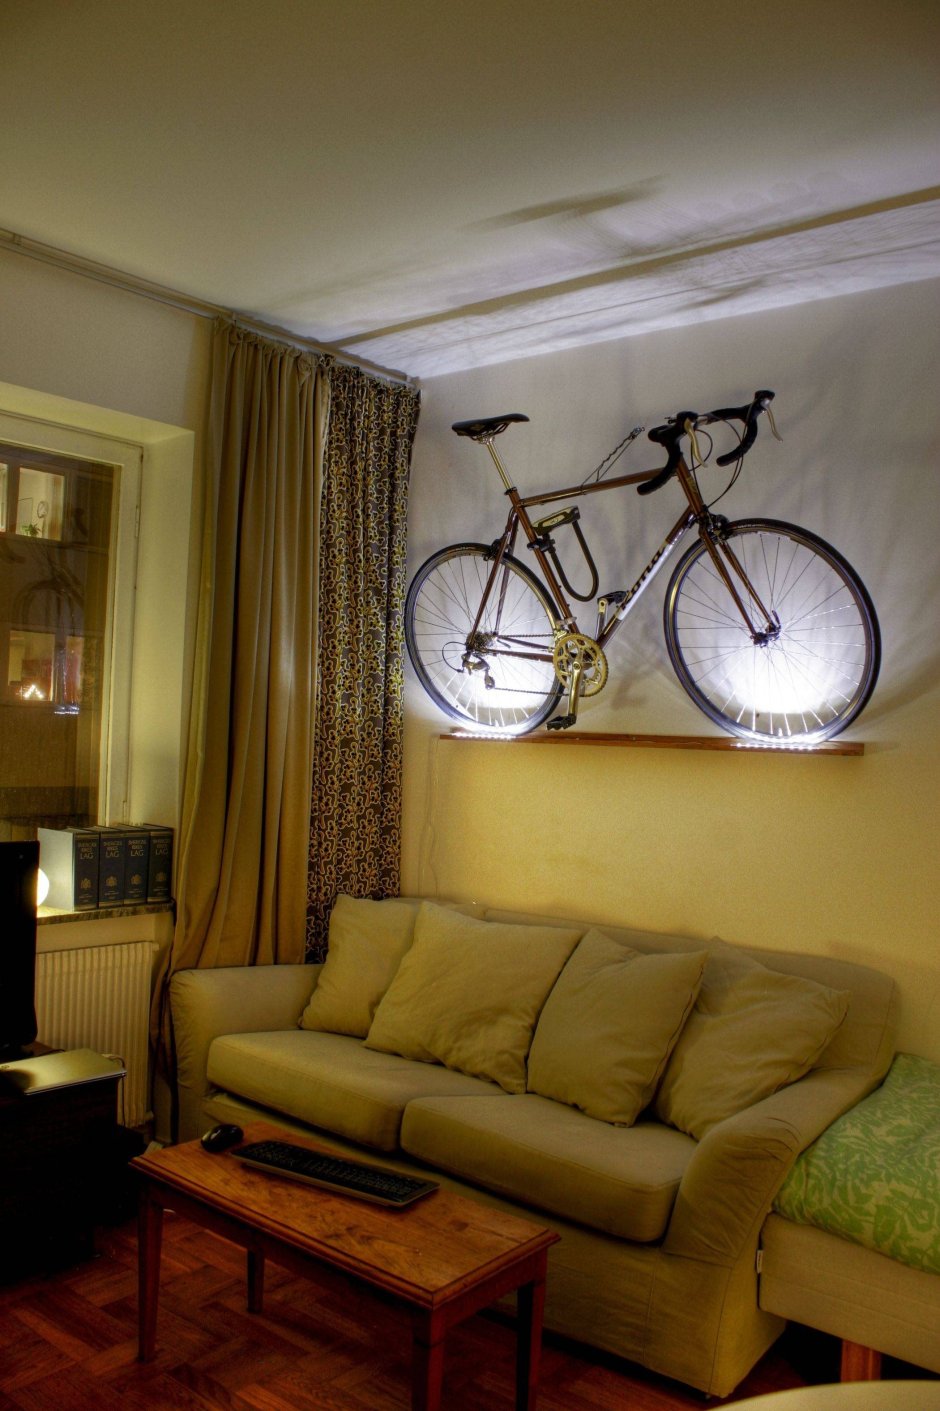 Велосипед в интерьере квартиры